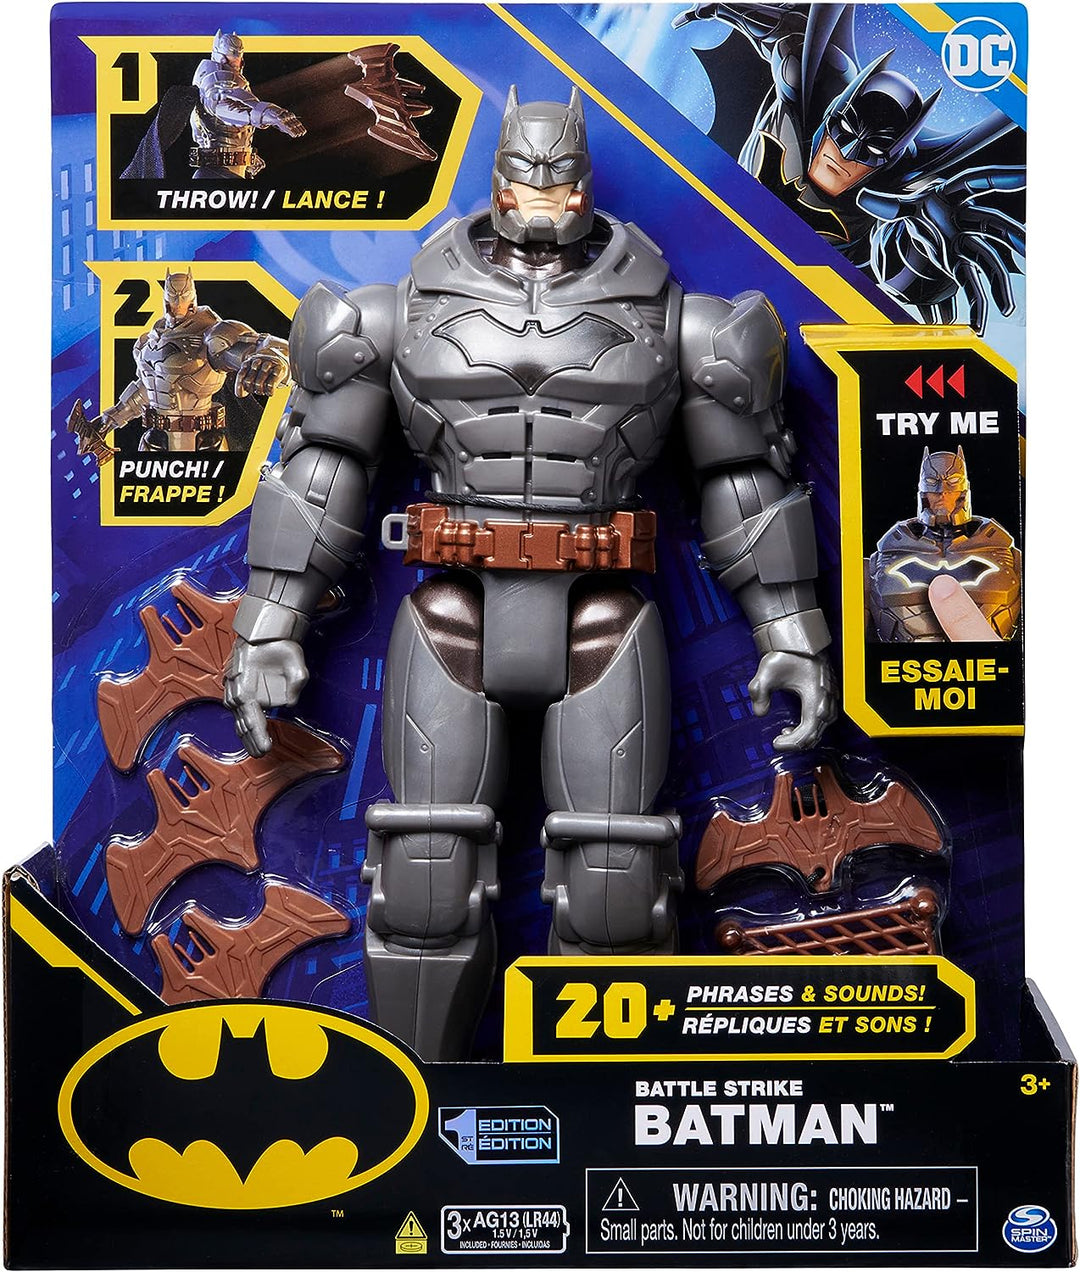 DC Comics, Battle Strike Batman 12-inch Action Figure, 20+ Phrases and Sounds